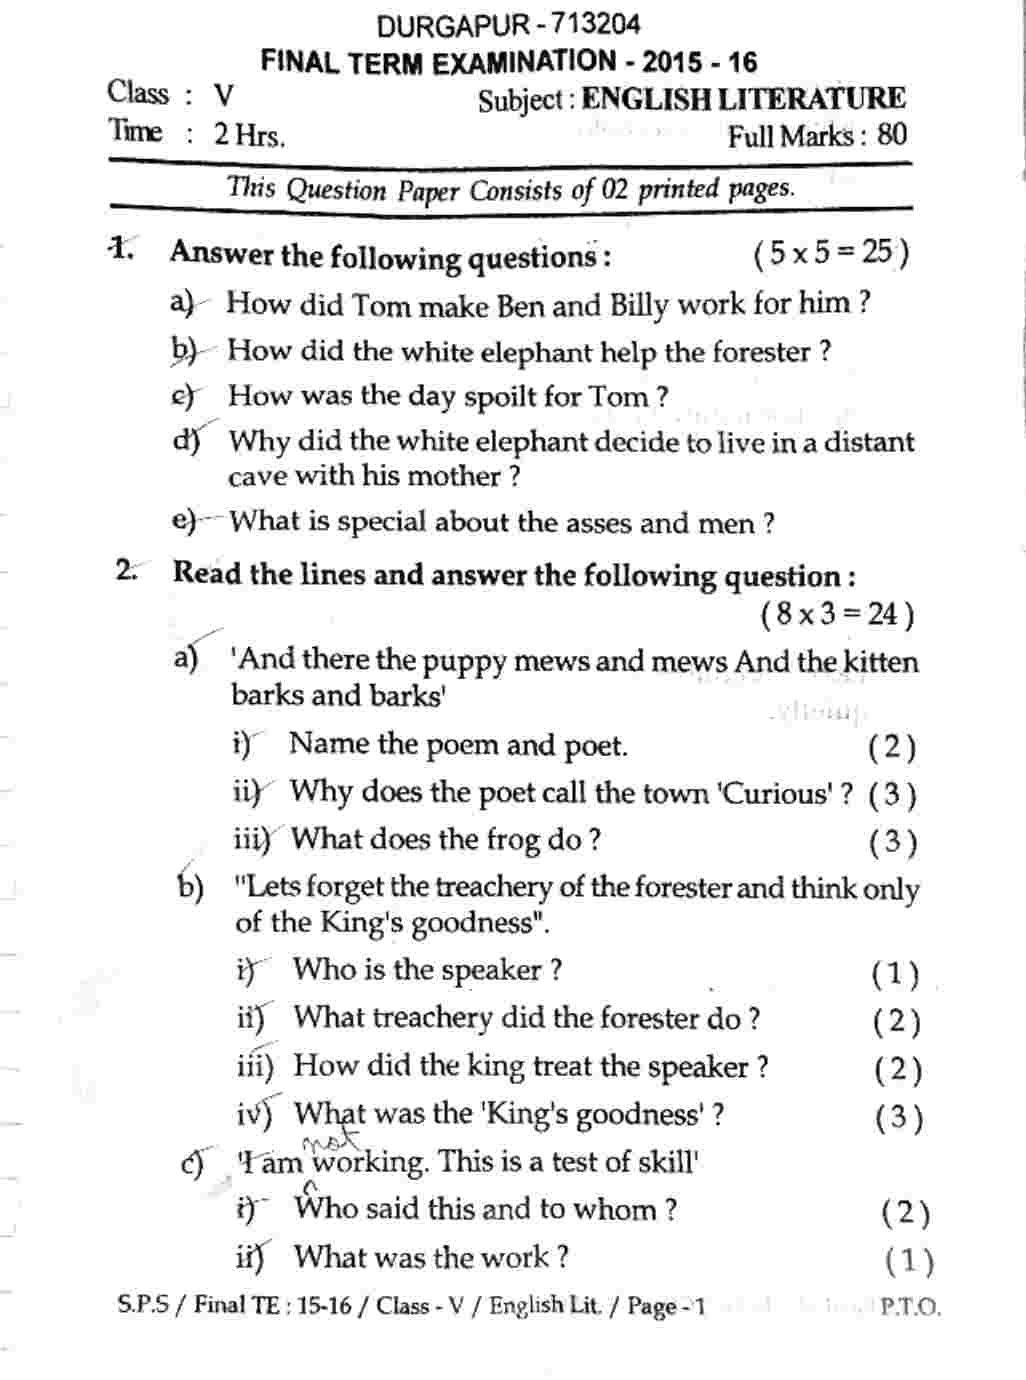 english grammar question paper icse